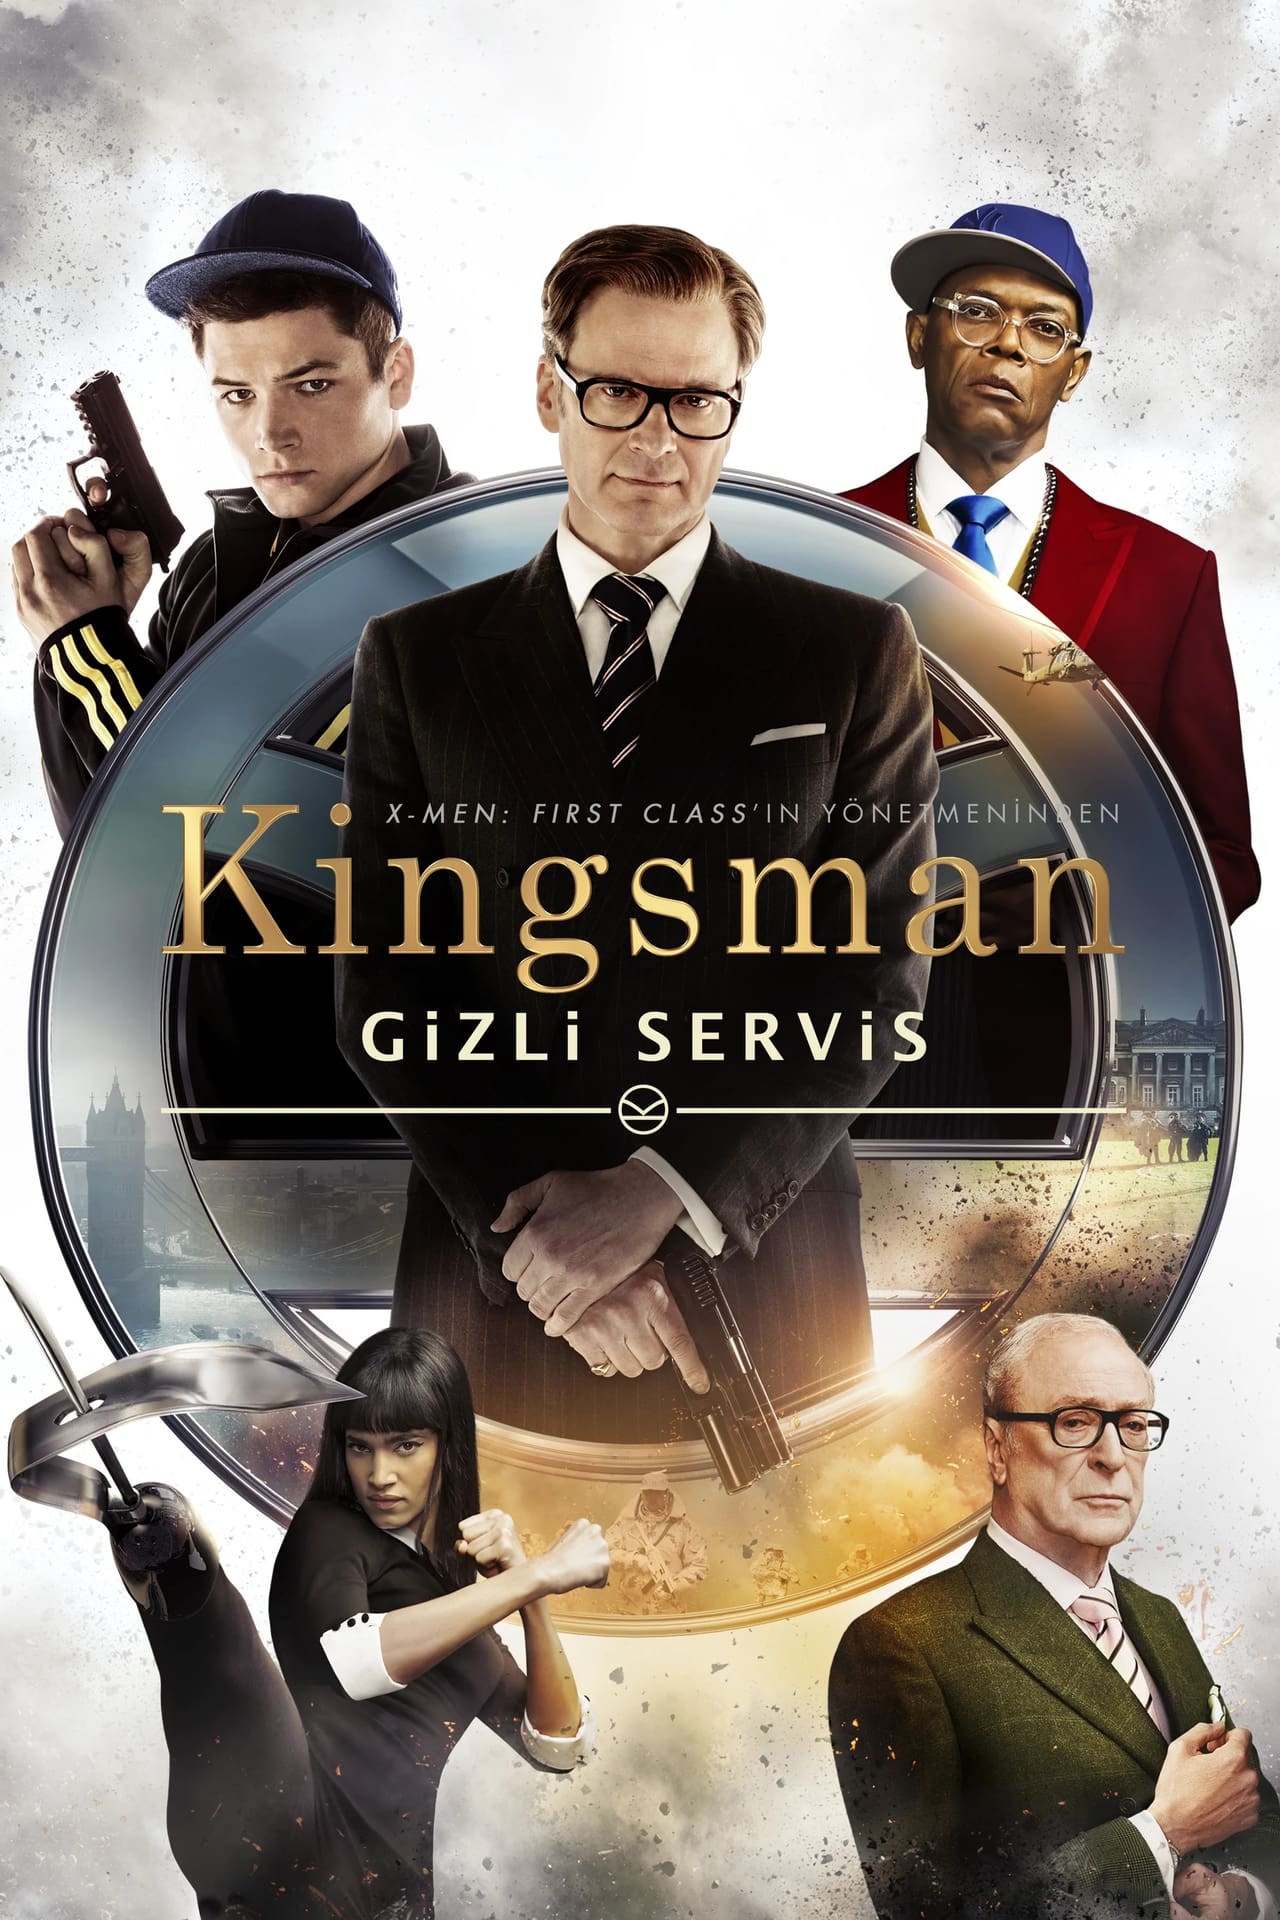 Kingsman: The Secret Service (2014) Unrated Cut 256Kbps 23.976Fps 48Khz 5.1Ch Disney+ DD+ E-AC3 Turkish Audio TAC